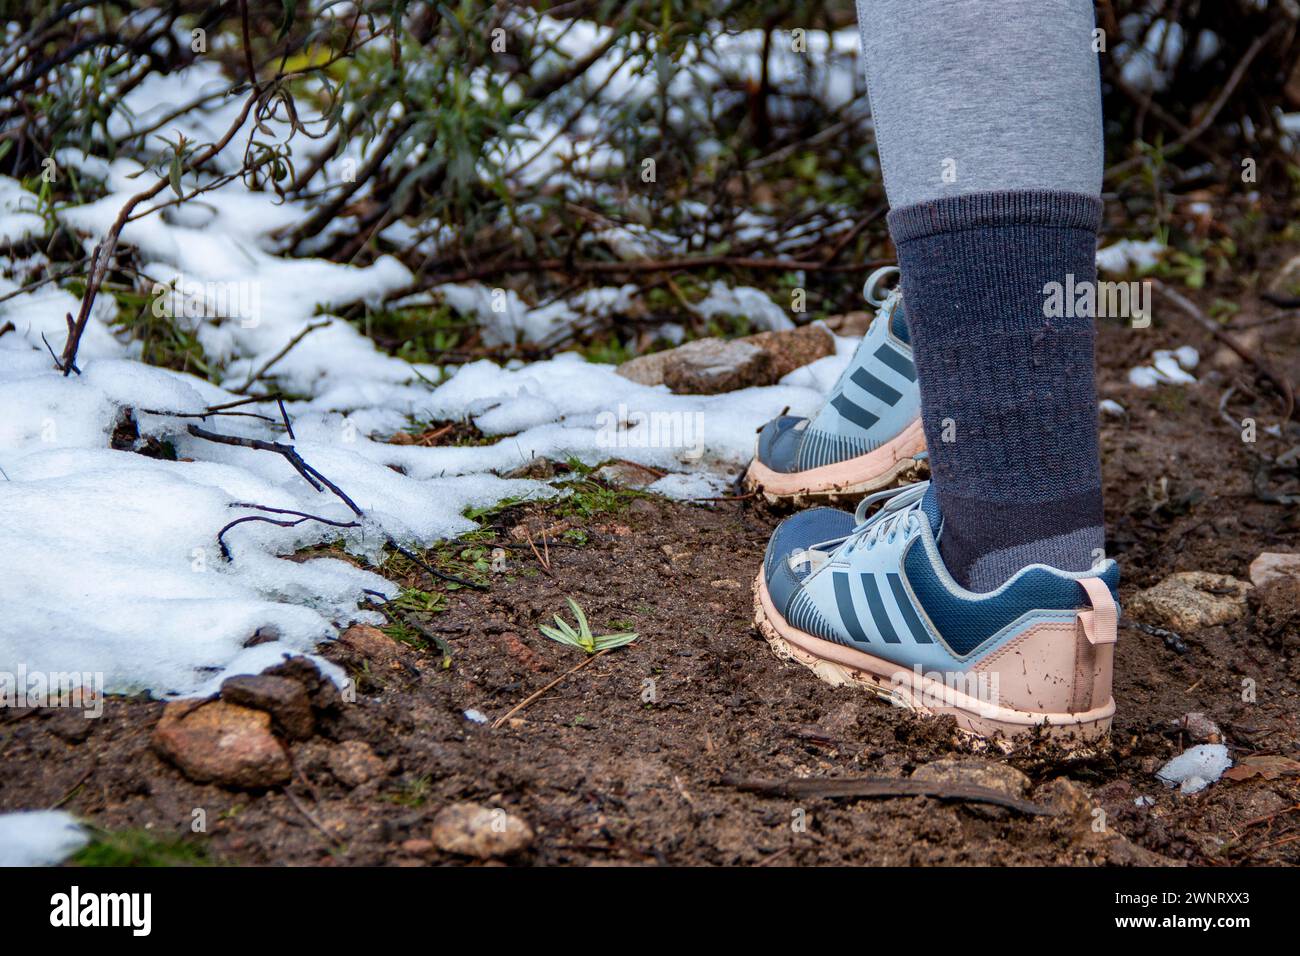 Femme marchant le long des sentiers de montagne enneigés avec des chaussures Adidas Terrex pour une utilisation de trekking Banque D'Images